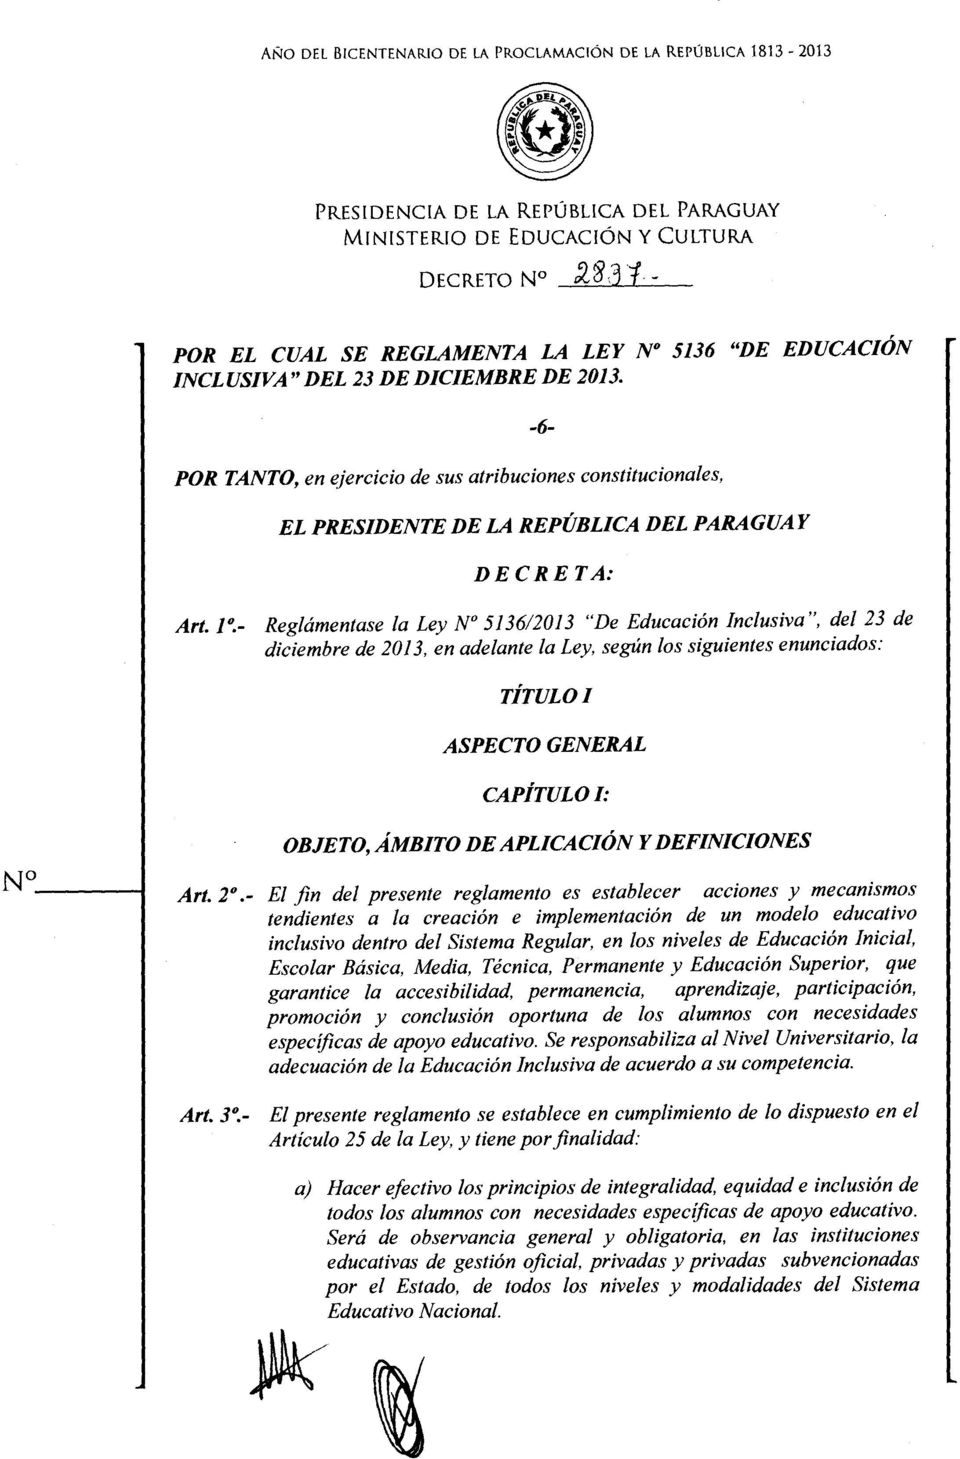 - Reglámentase la Ley No 513612013 "De Educación Inclusiva", del 23 de diciembre de 2013, en adelante la Ley, según los siguientes enunciados: TÍTULO/ ASPECTO GENERAL CAPÍTULO/: OBJETO, ÁMBITO DE